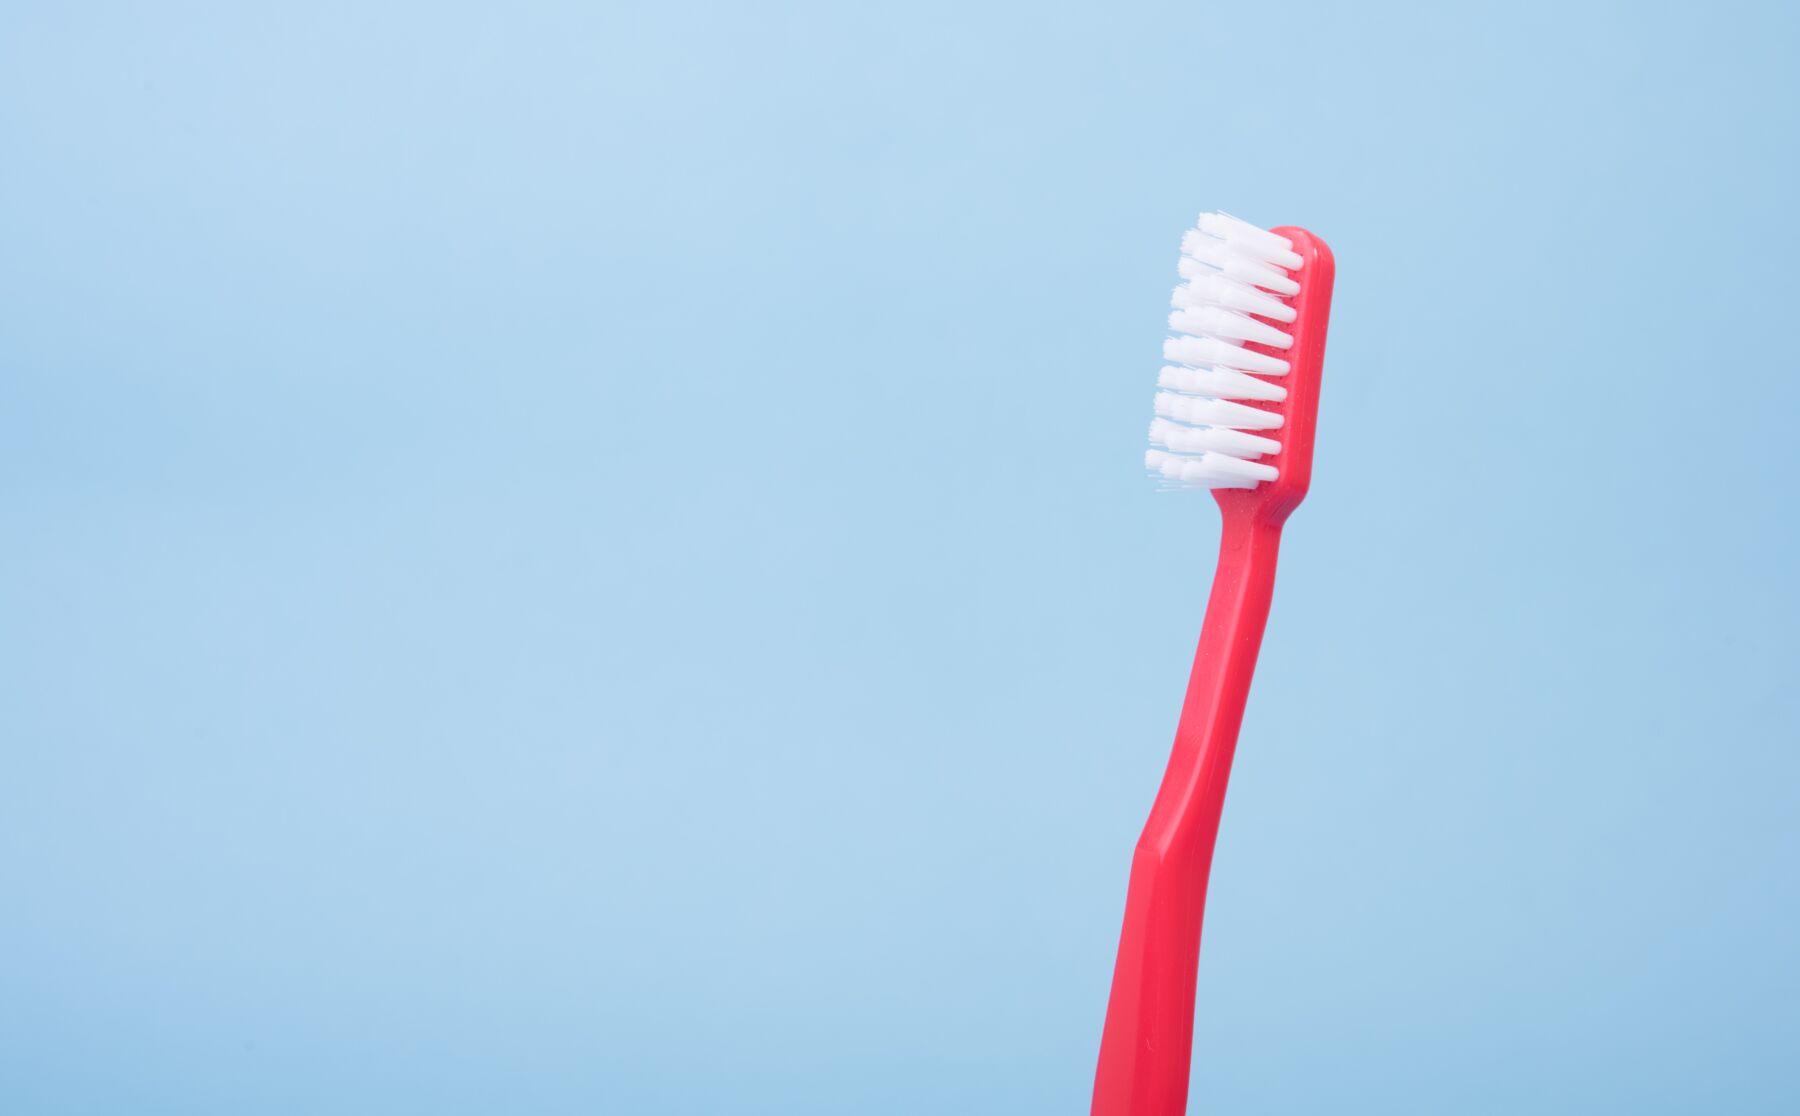 Muistisäännöt ja vinkit lasten hampaiden pesuun – hammaslääkäri huolissaan yhdestä tavasta